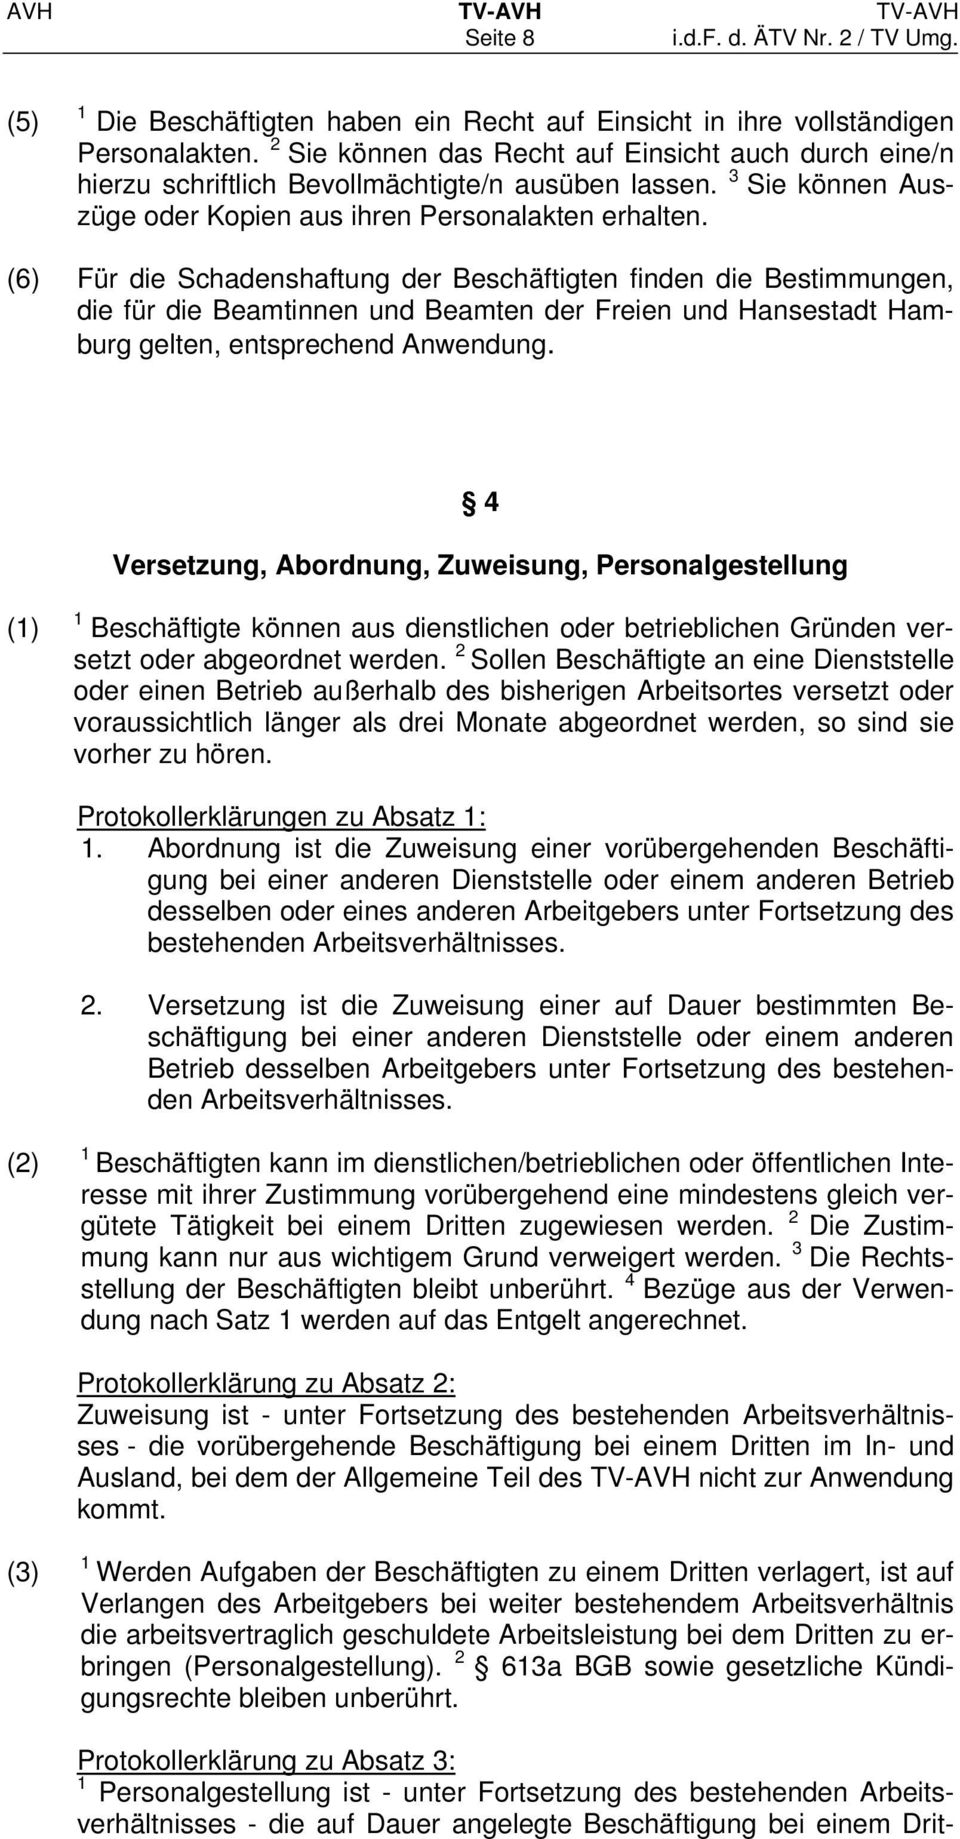 (6) Für die Schadenshaftung der Beschäftigten finden die Bestimmungen, die für die Beamtinnen und Beamten der Freien und Hansestadt Hamburg gelten, entsprechend Anwendung.